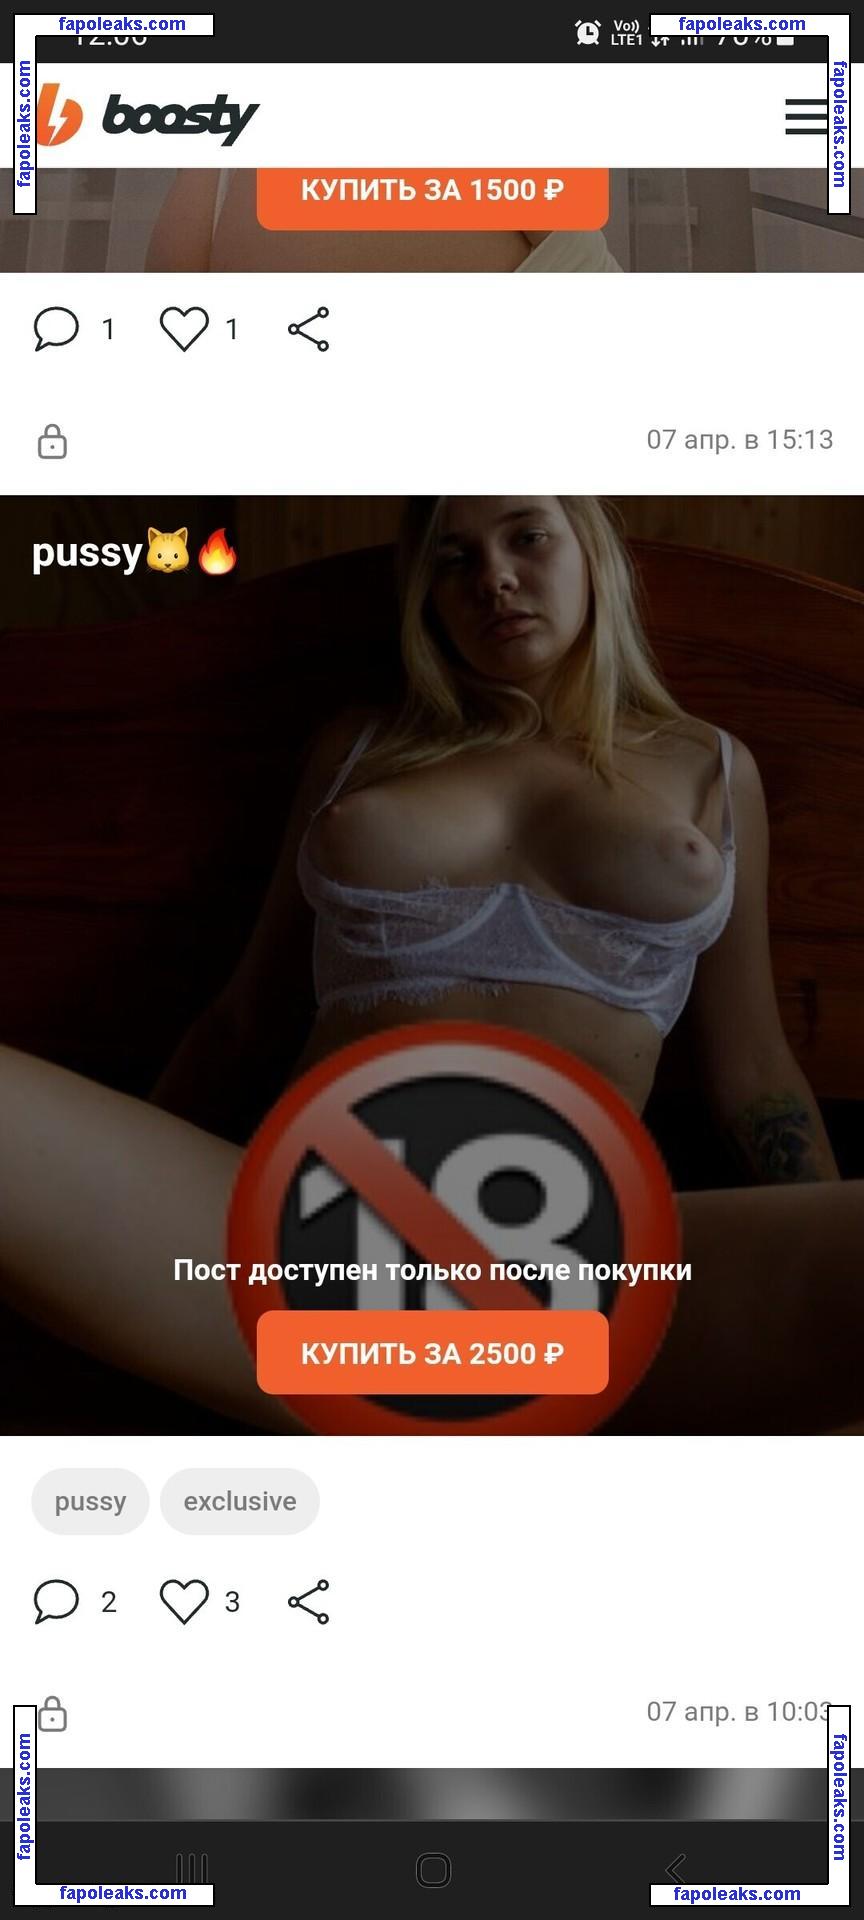 Tihomirova Natalia / pinkk.bunny_ / tihomirovanatalia nude photo #0008 from OnlyFans